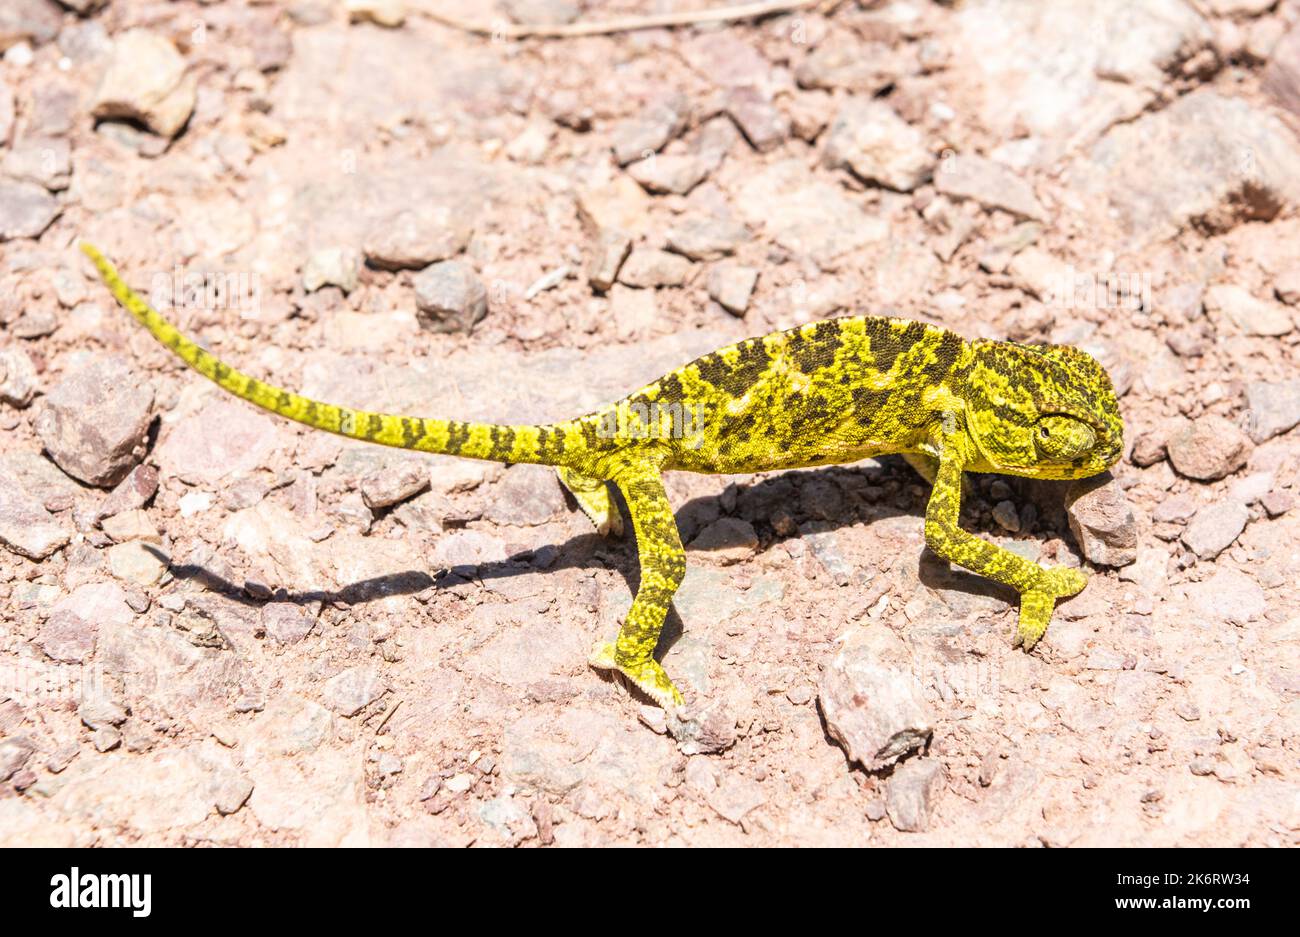 Bébé Chameleon commun (Chamaeleo chamaeleon) sur le terrain en Turquie. Banque D'Images